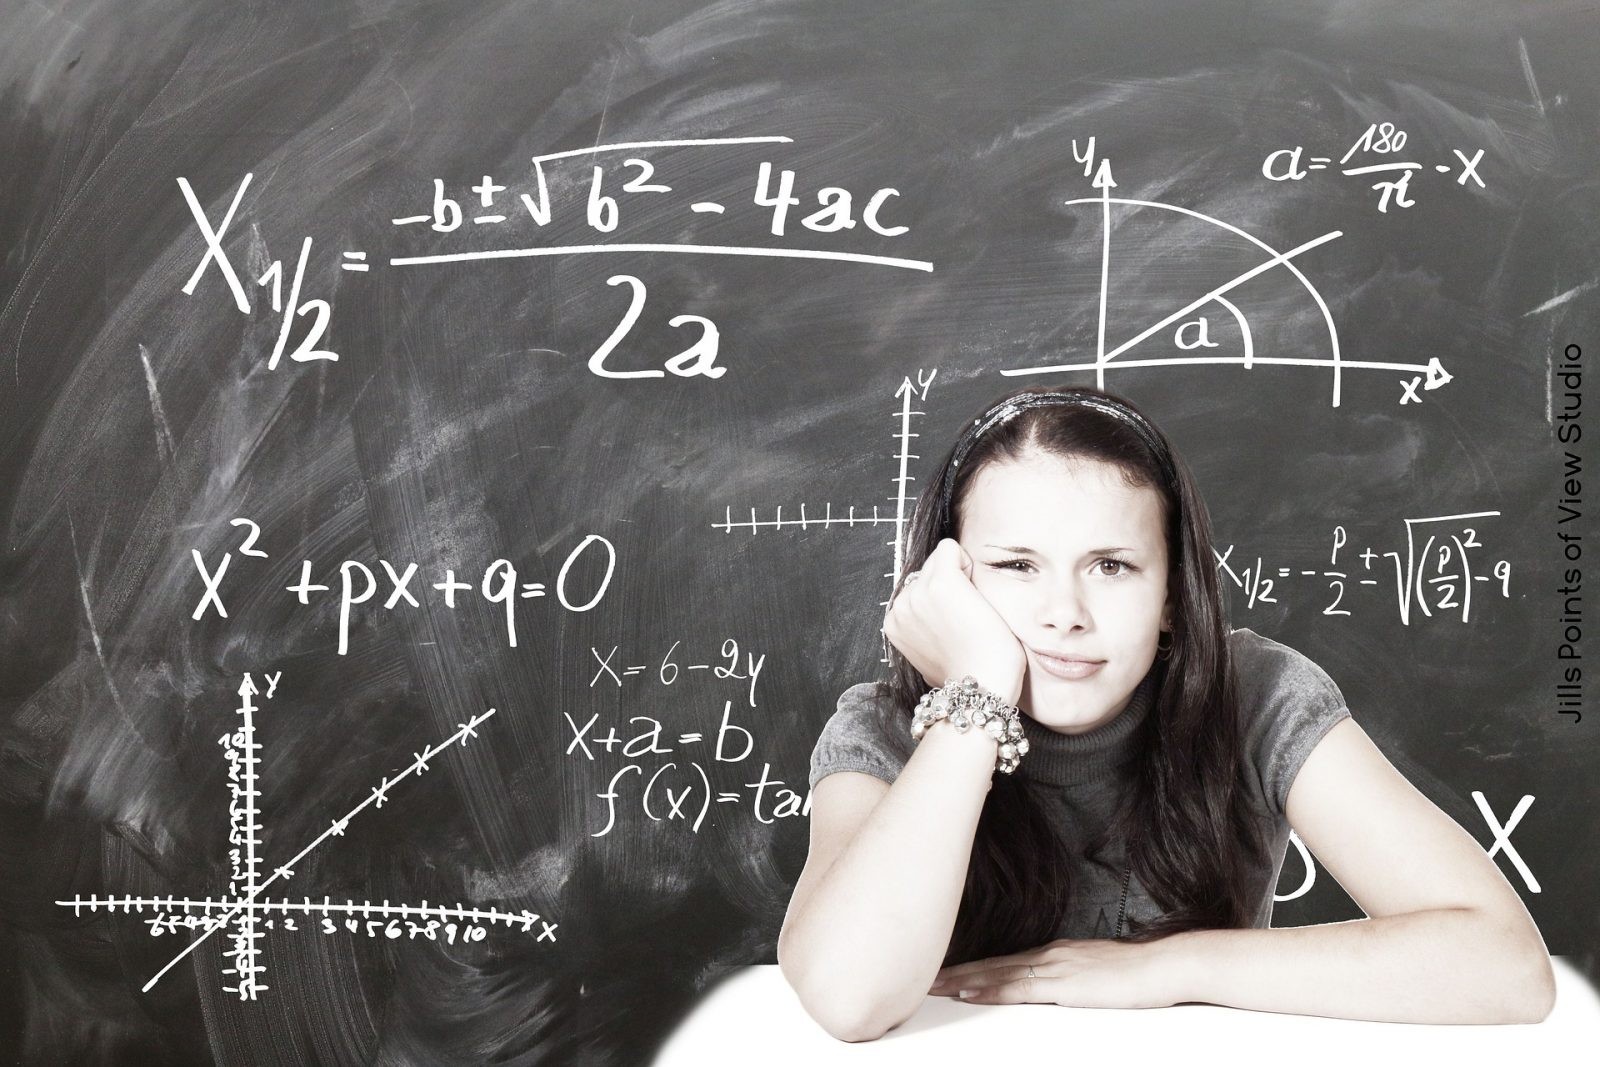 Nauczyciel stworzył metodę, która dowodzi, że zły uczeń z matematyki nie istnieje